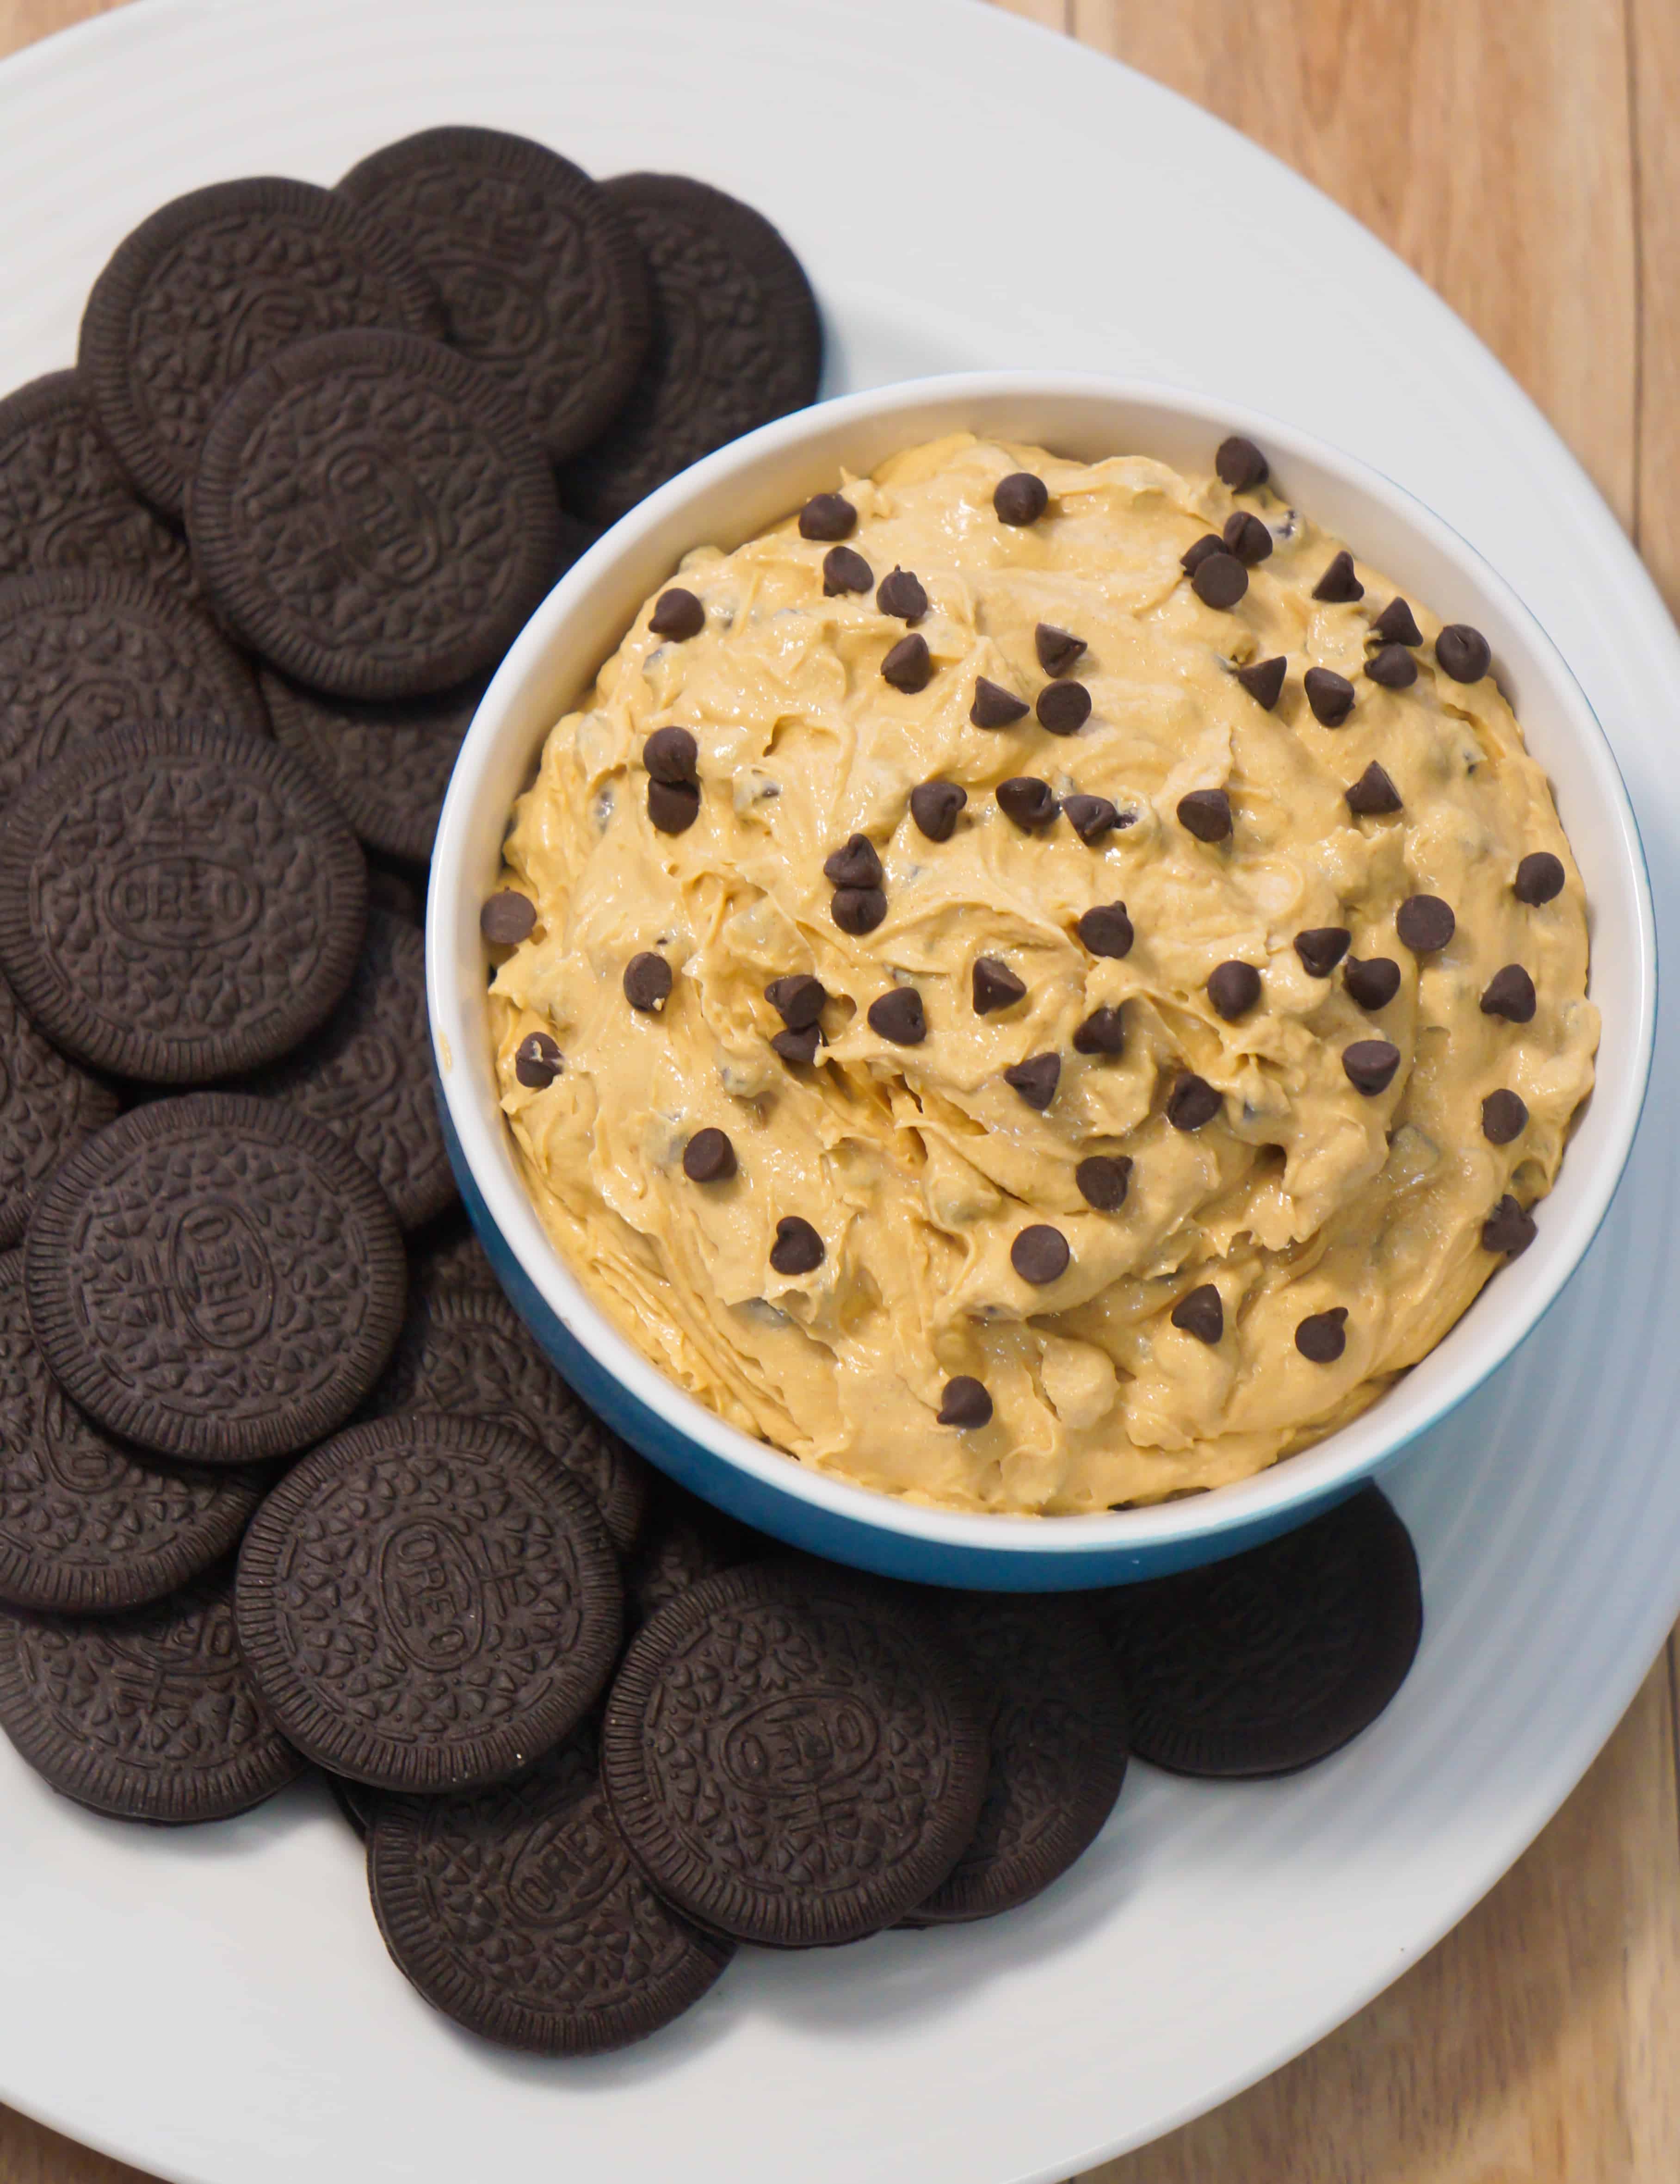 Easy no bake dessert dip recipe.